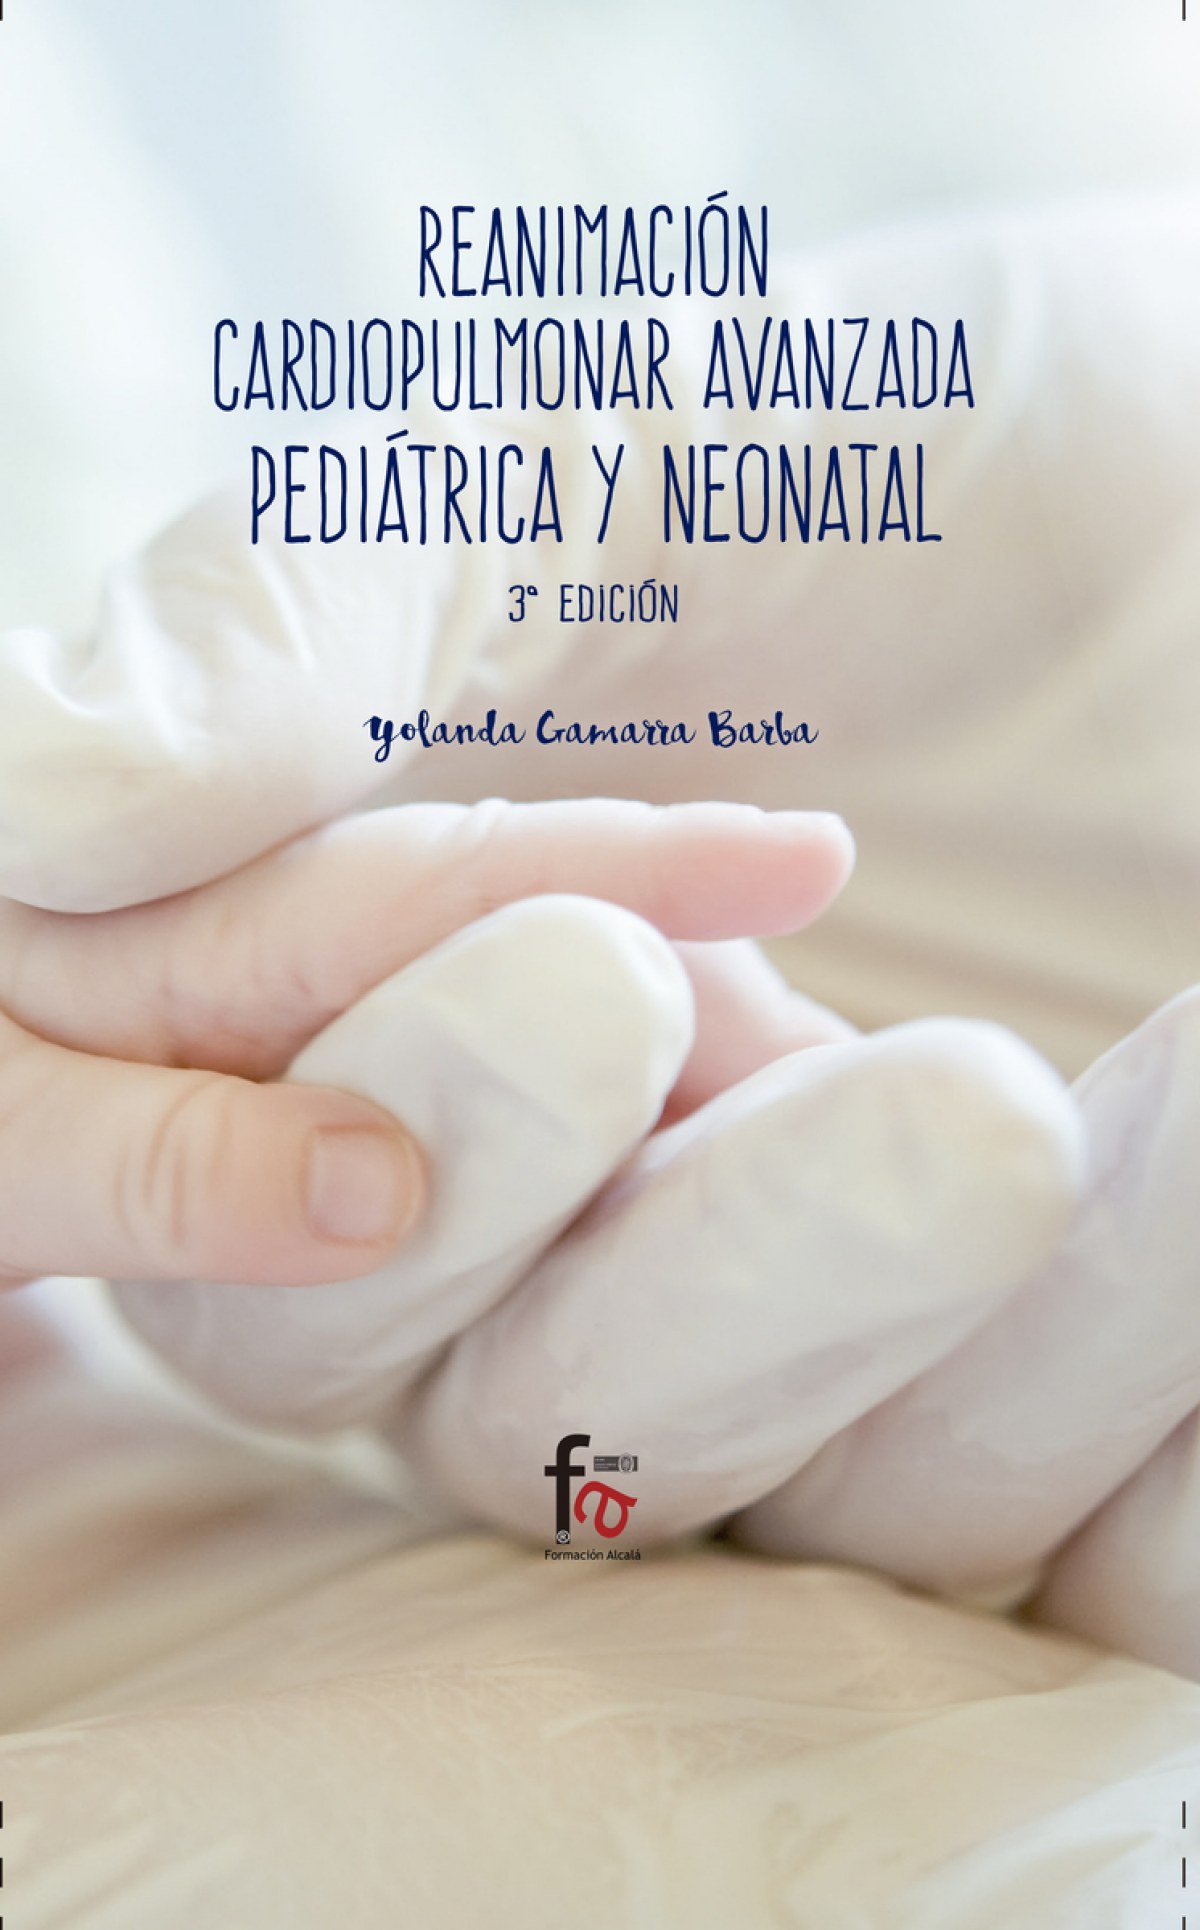 Reanimación cardiopulmonar avanzada pediátrica y neonatal - Gamarra, Yolanda